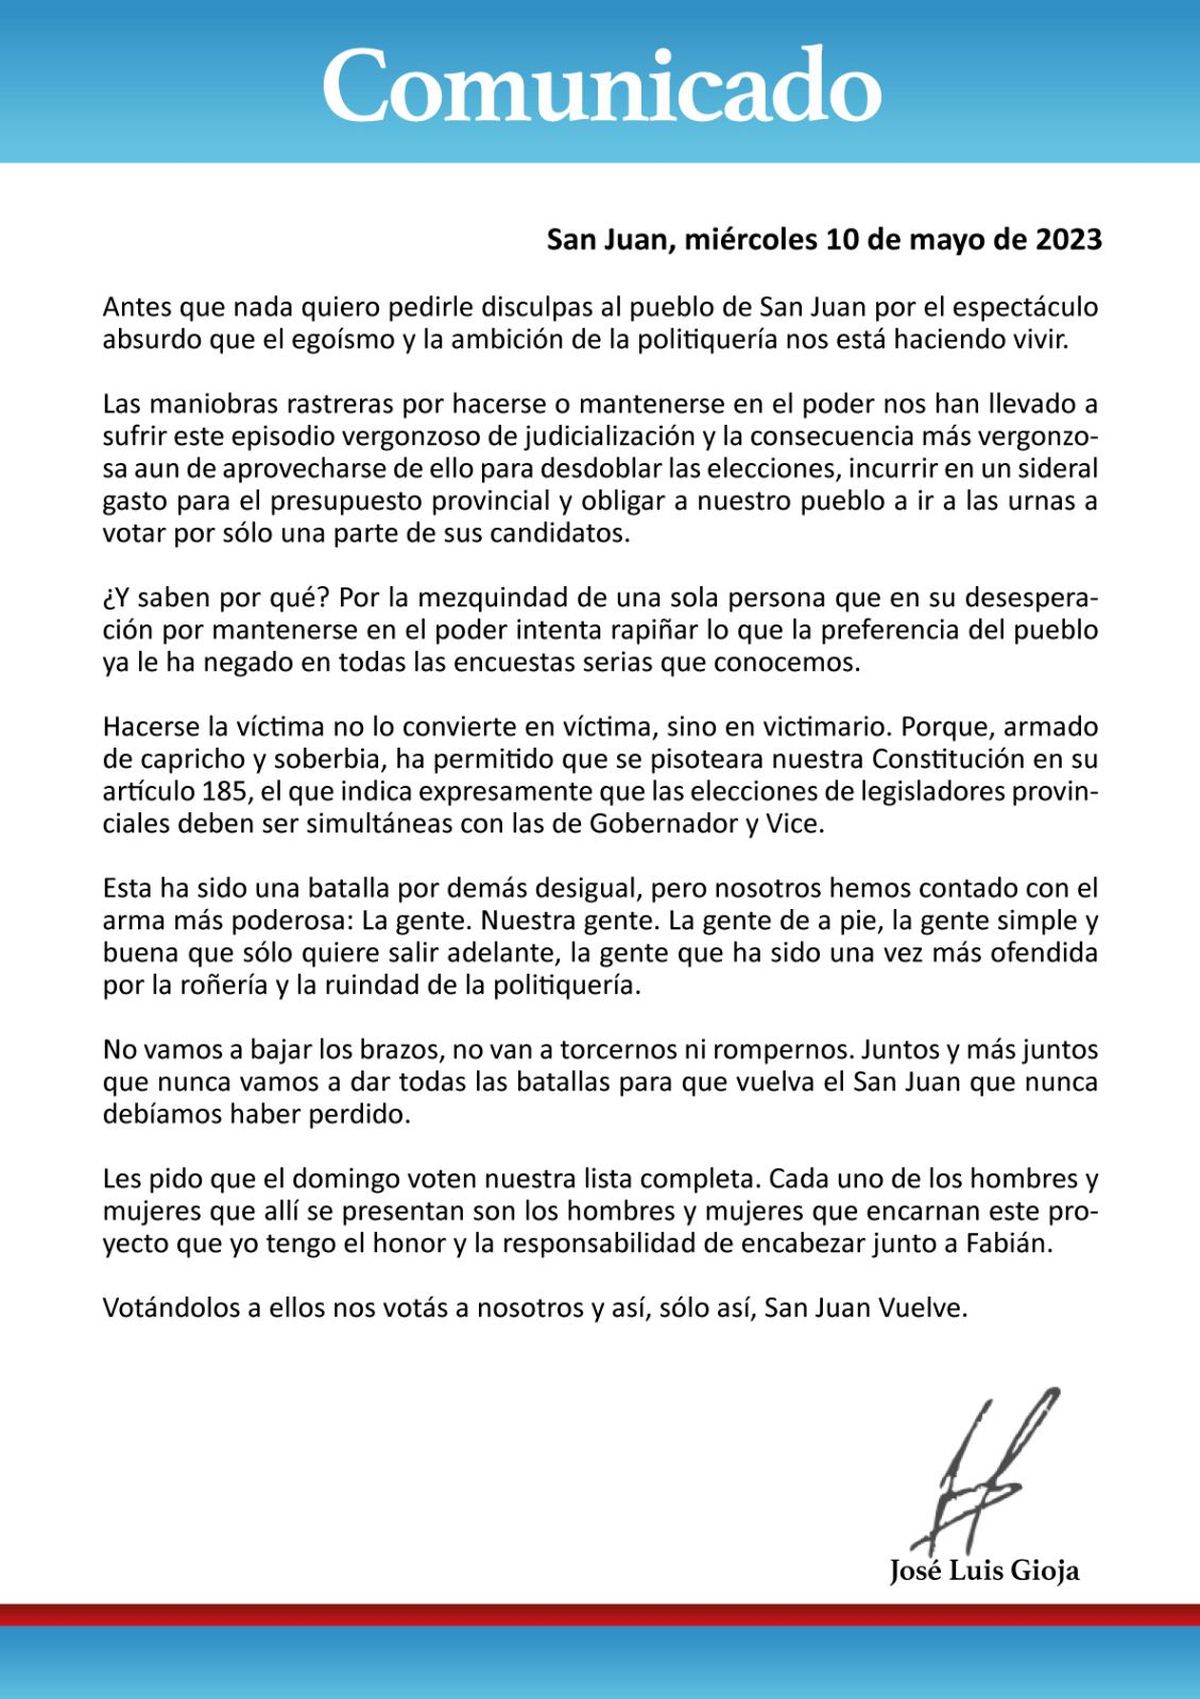 José Luis Gioja criticó a la Corte Suprema de la Nación y a Uñac